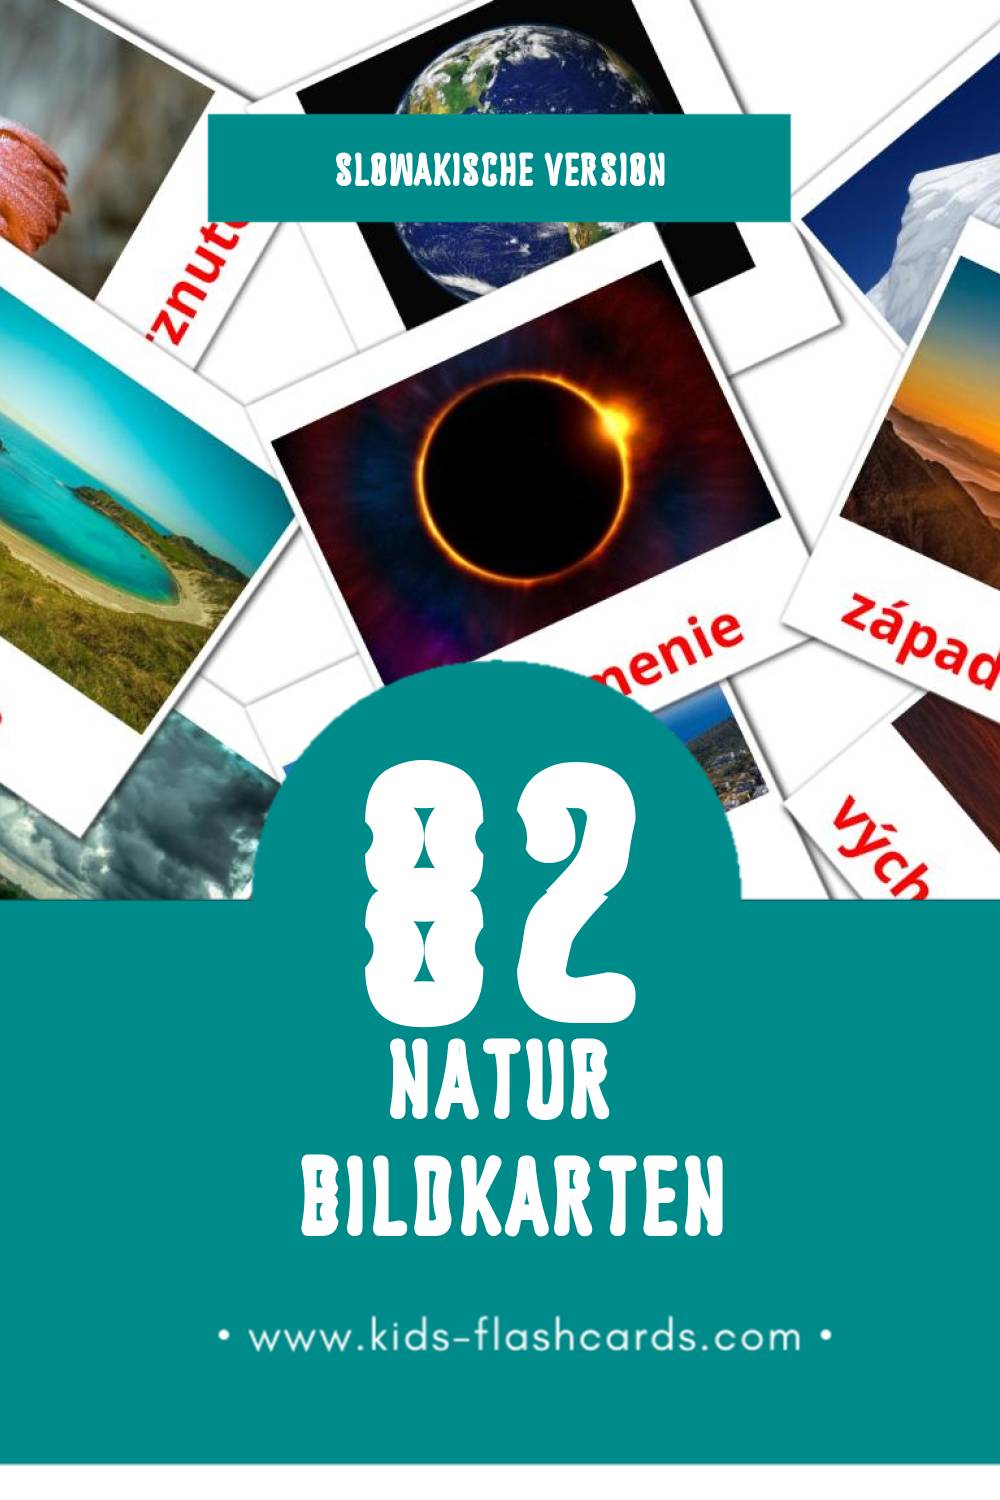 Visual Príroda Flashcards für Kleinkinder (82 Karten in Slowakisch)